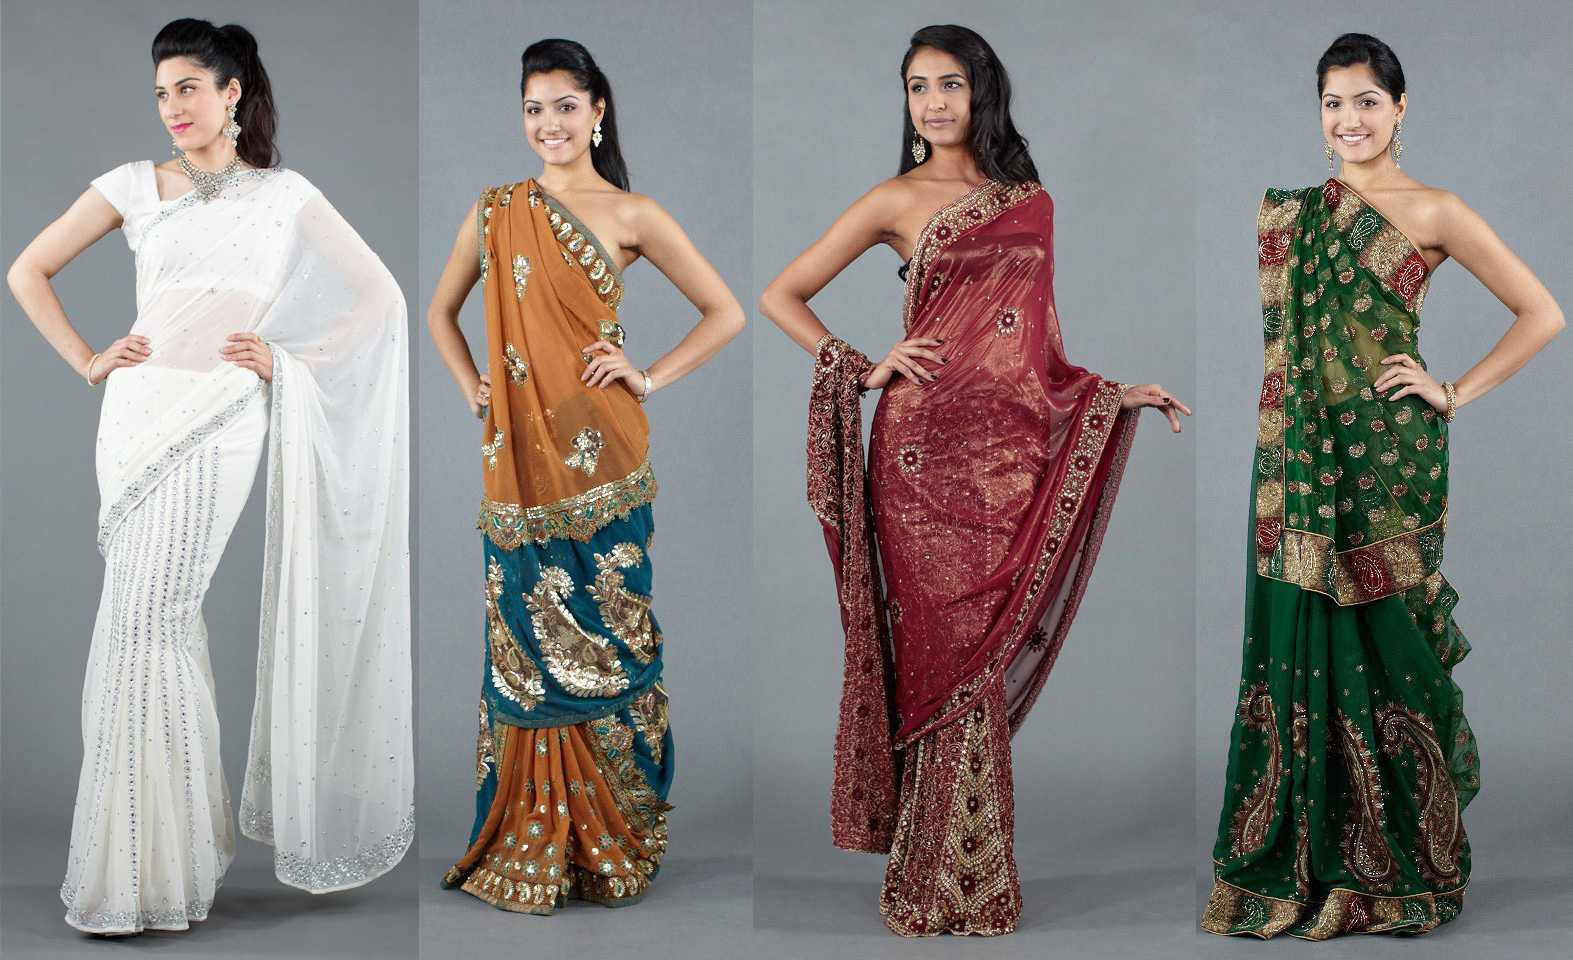 Индийский стиль в одежде — каллорит и традиции восточных красавиц